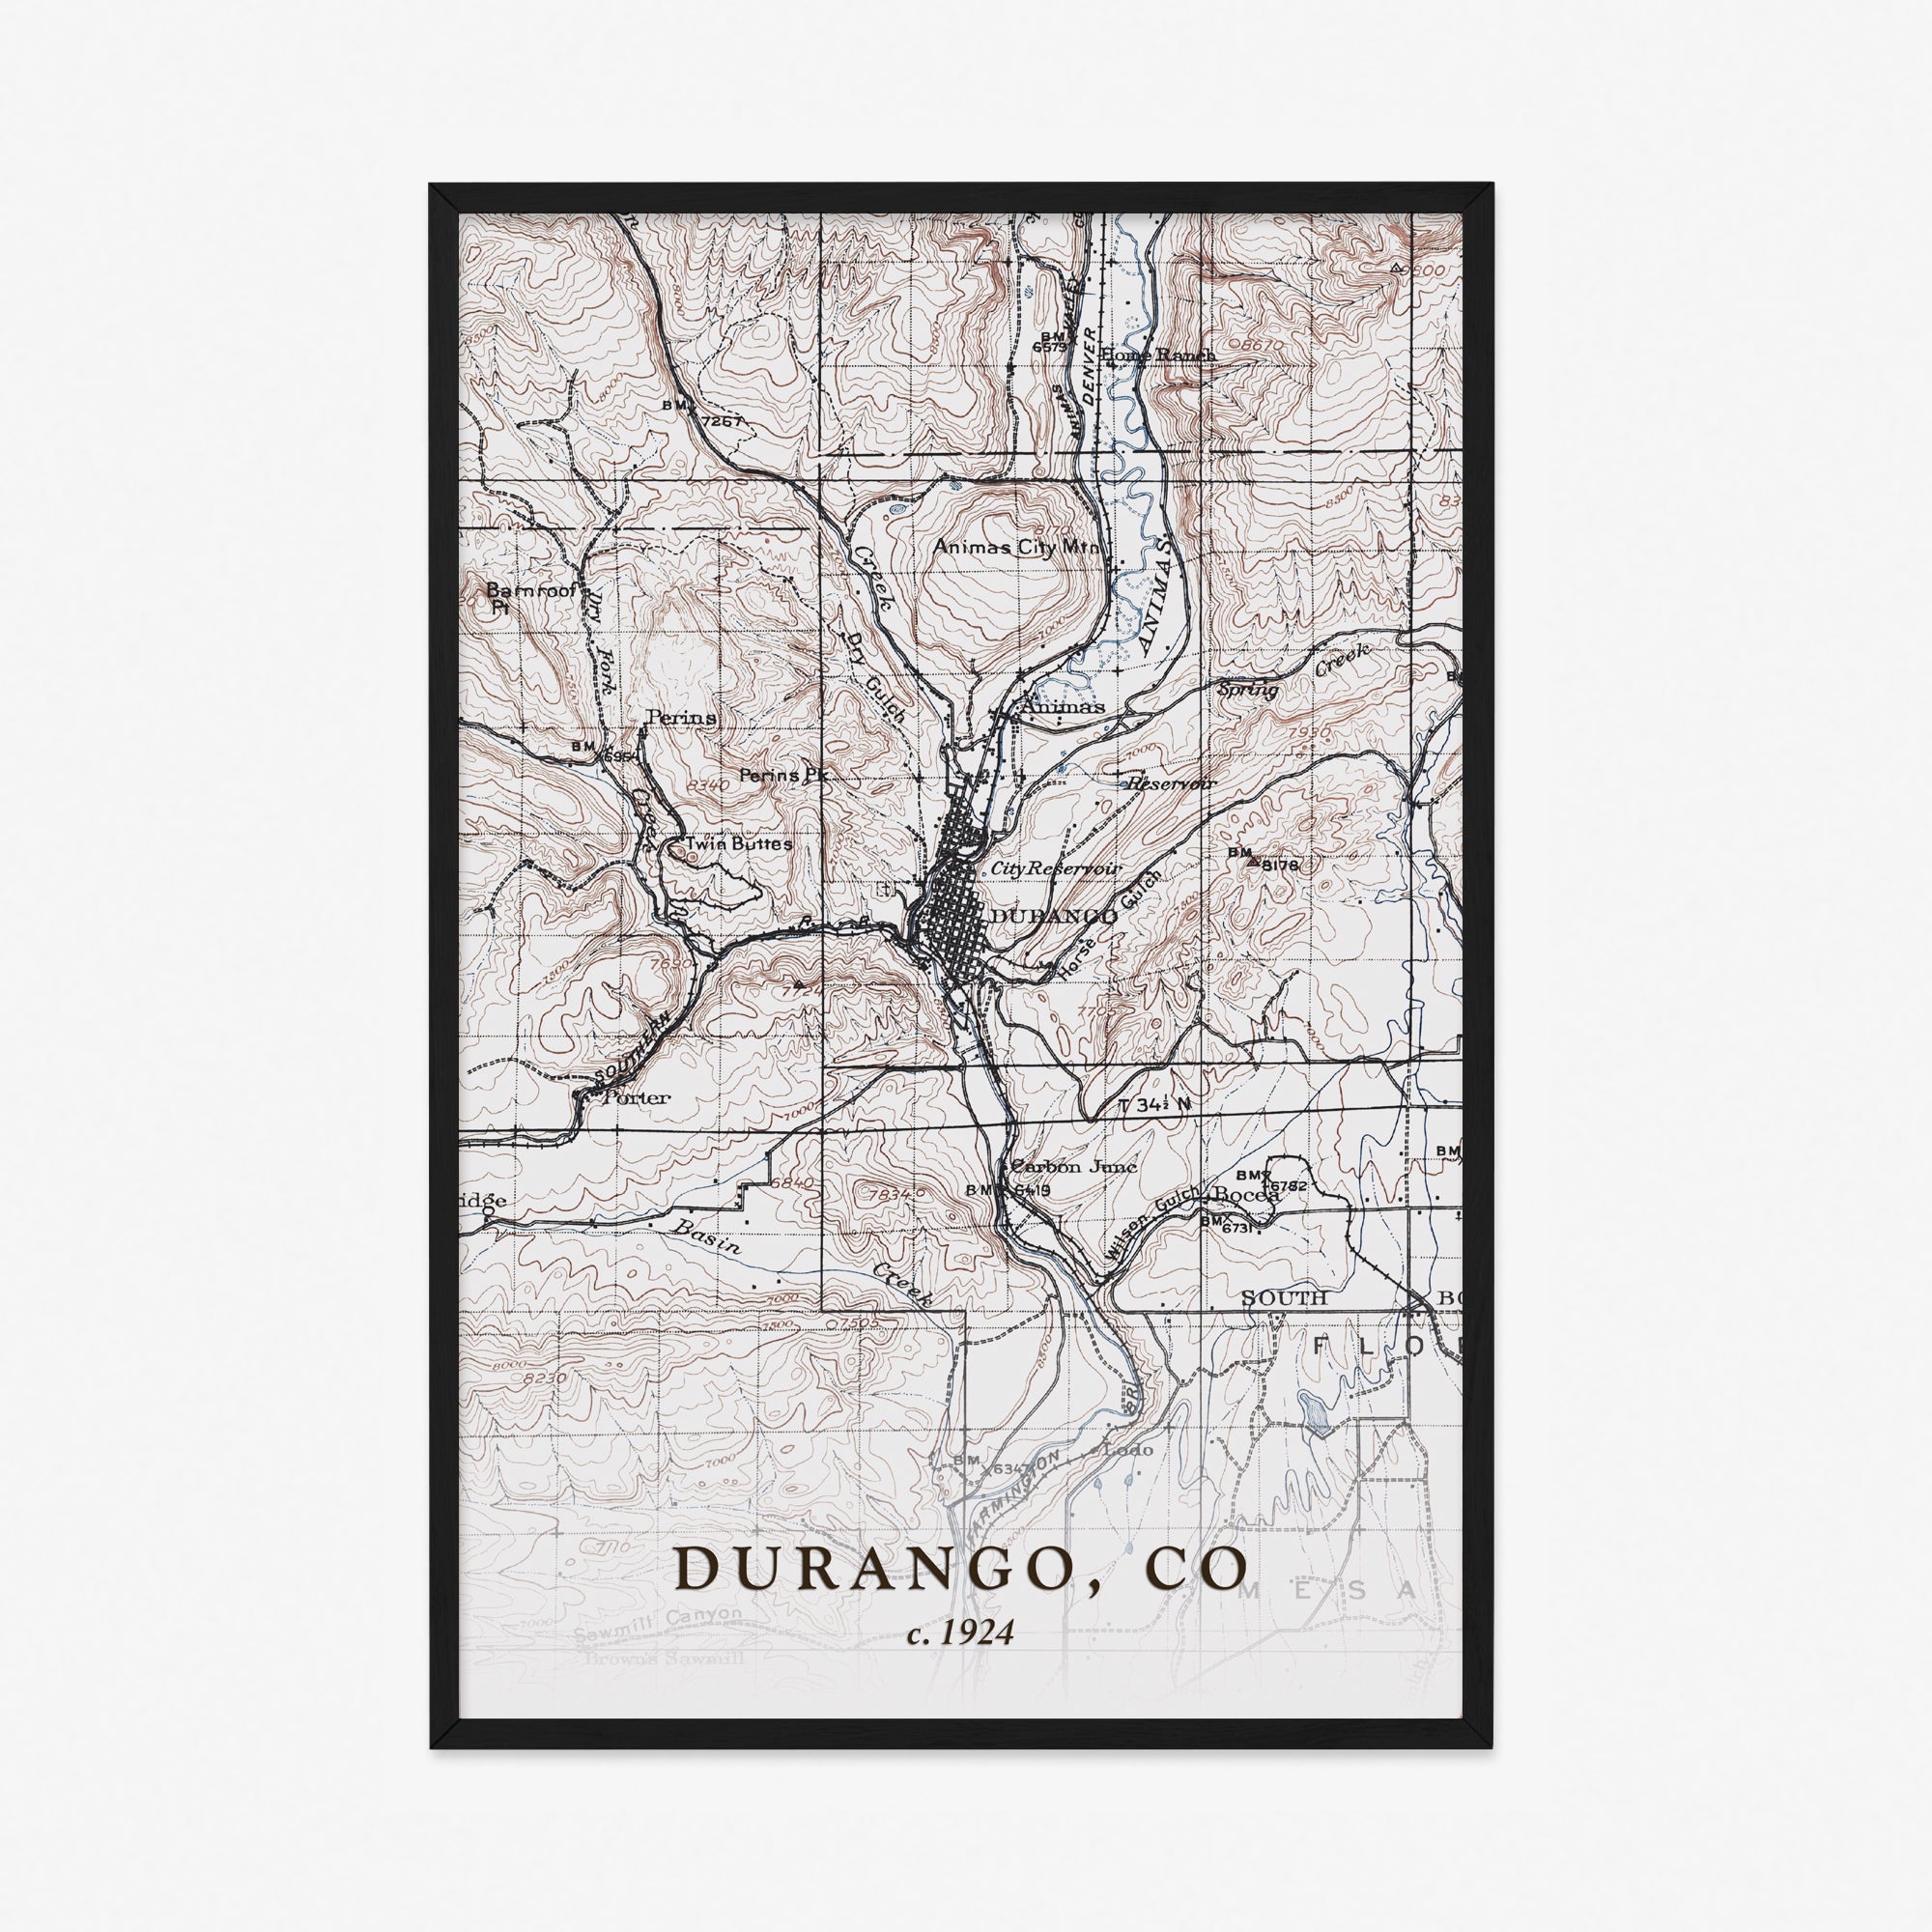 Durango, CO - 1924 Topographic Map